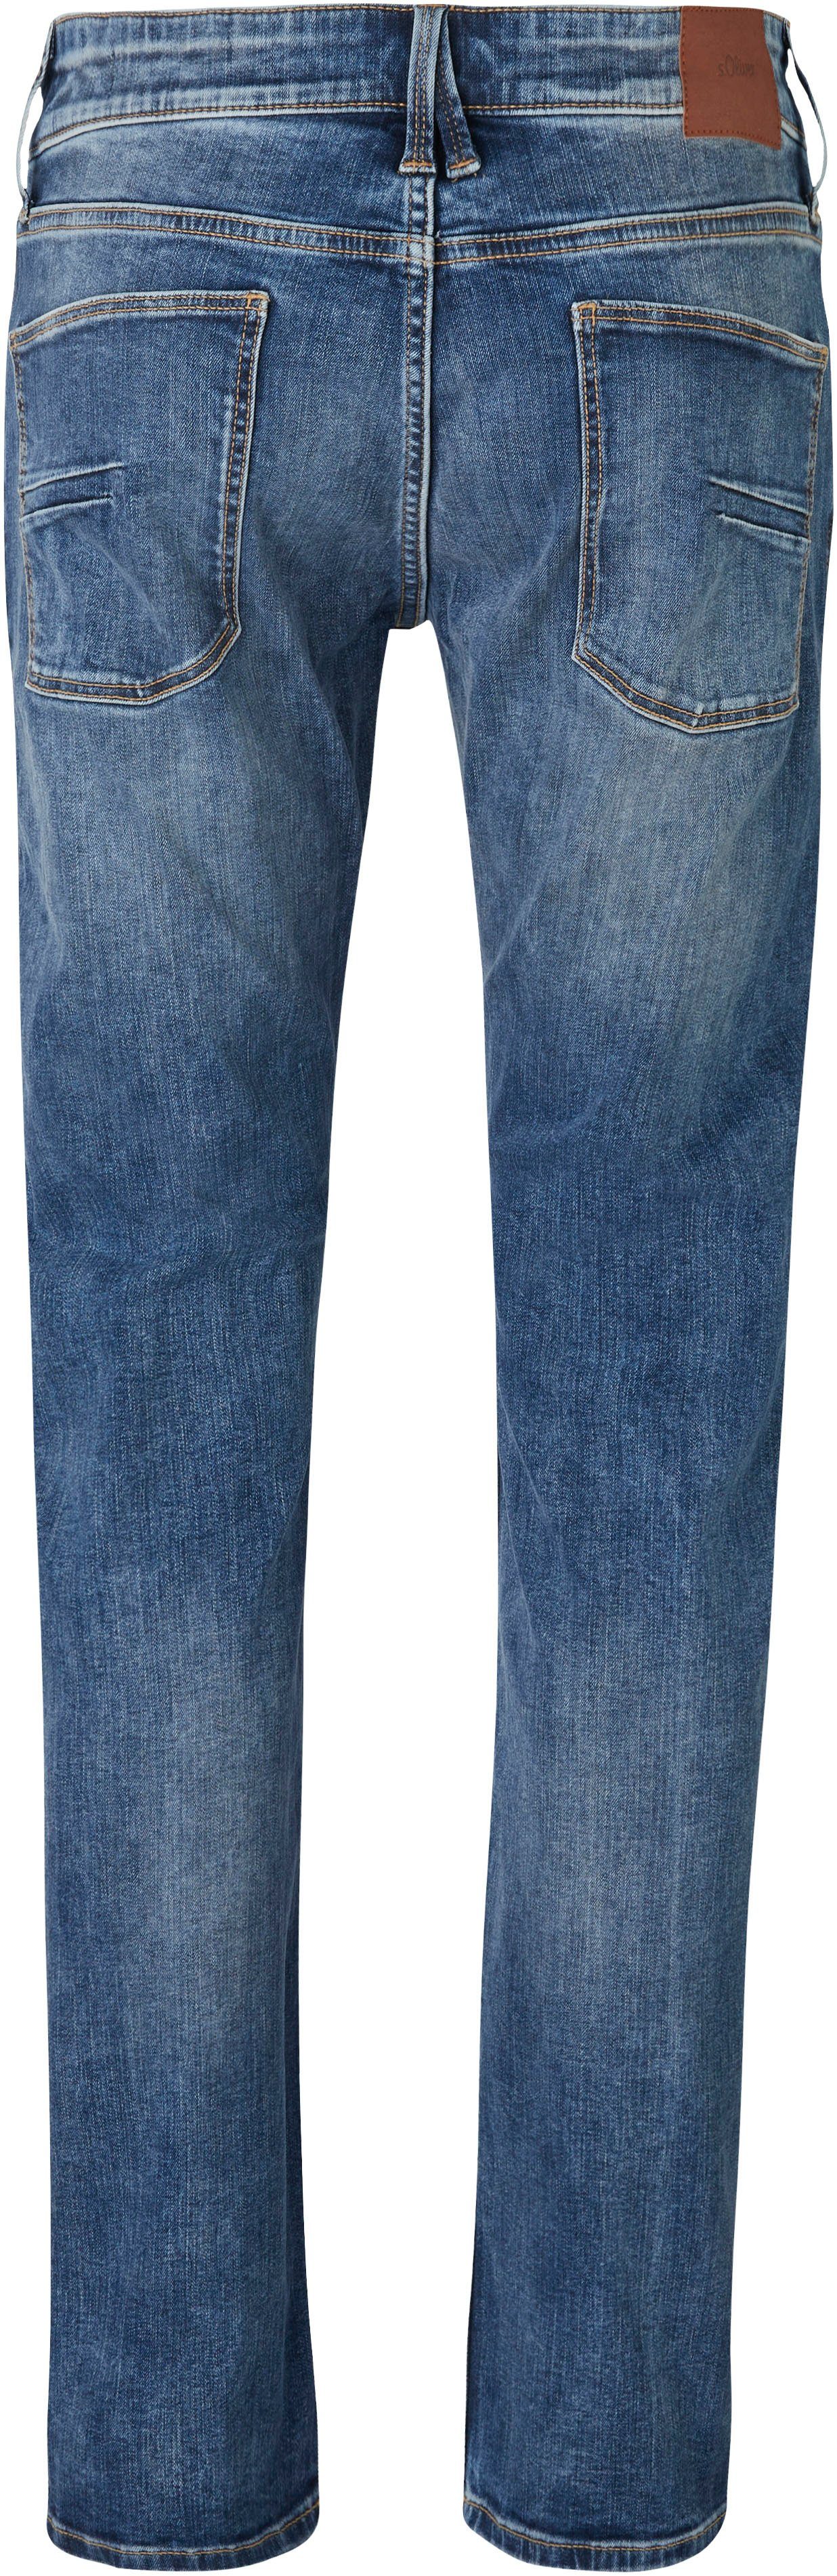 s.Oliver Bequeme 32 Jeans Gesäß- Eingrifftaschen und mit mid blue